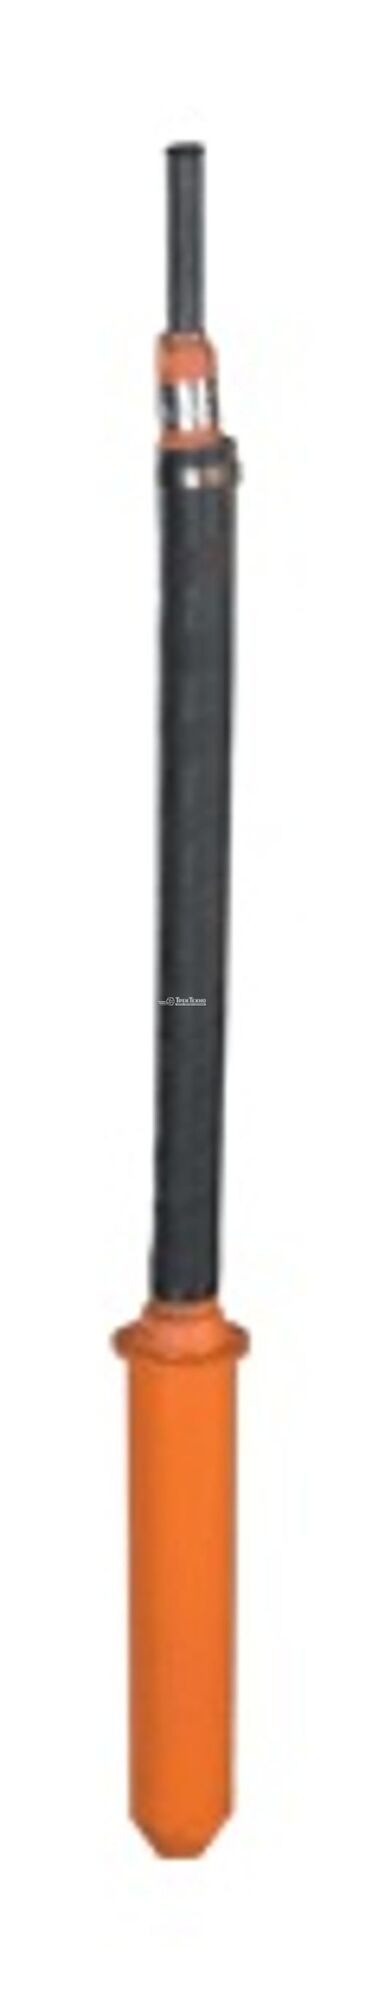 Вибратор глубинный ИВ-95 А 220 В, 200 Гц